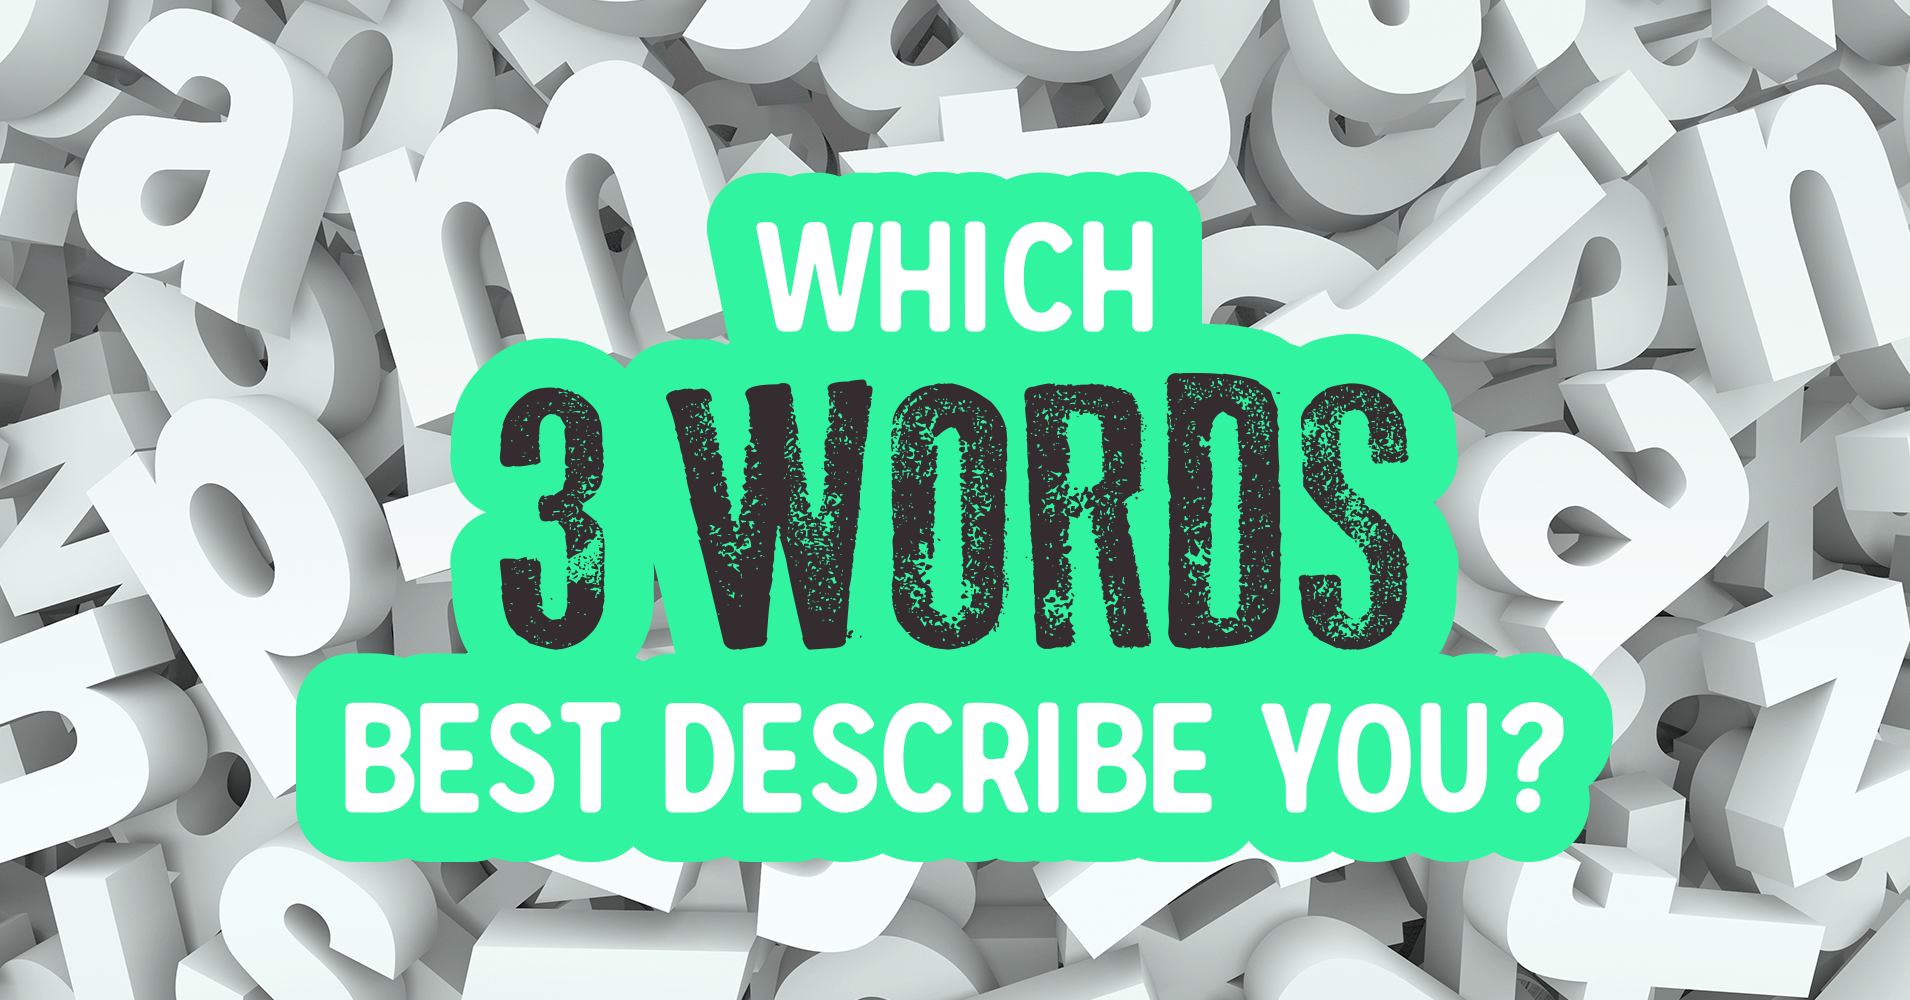 Which 3 Words Best Describe You? - Quiz - Quizony.com